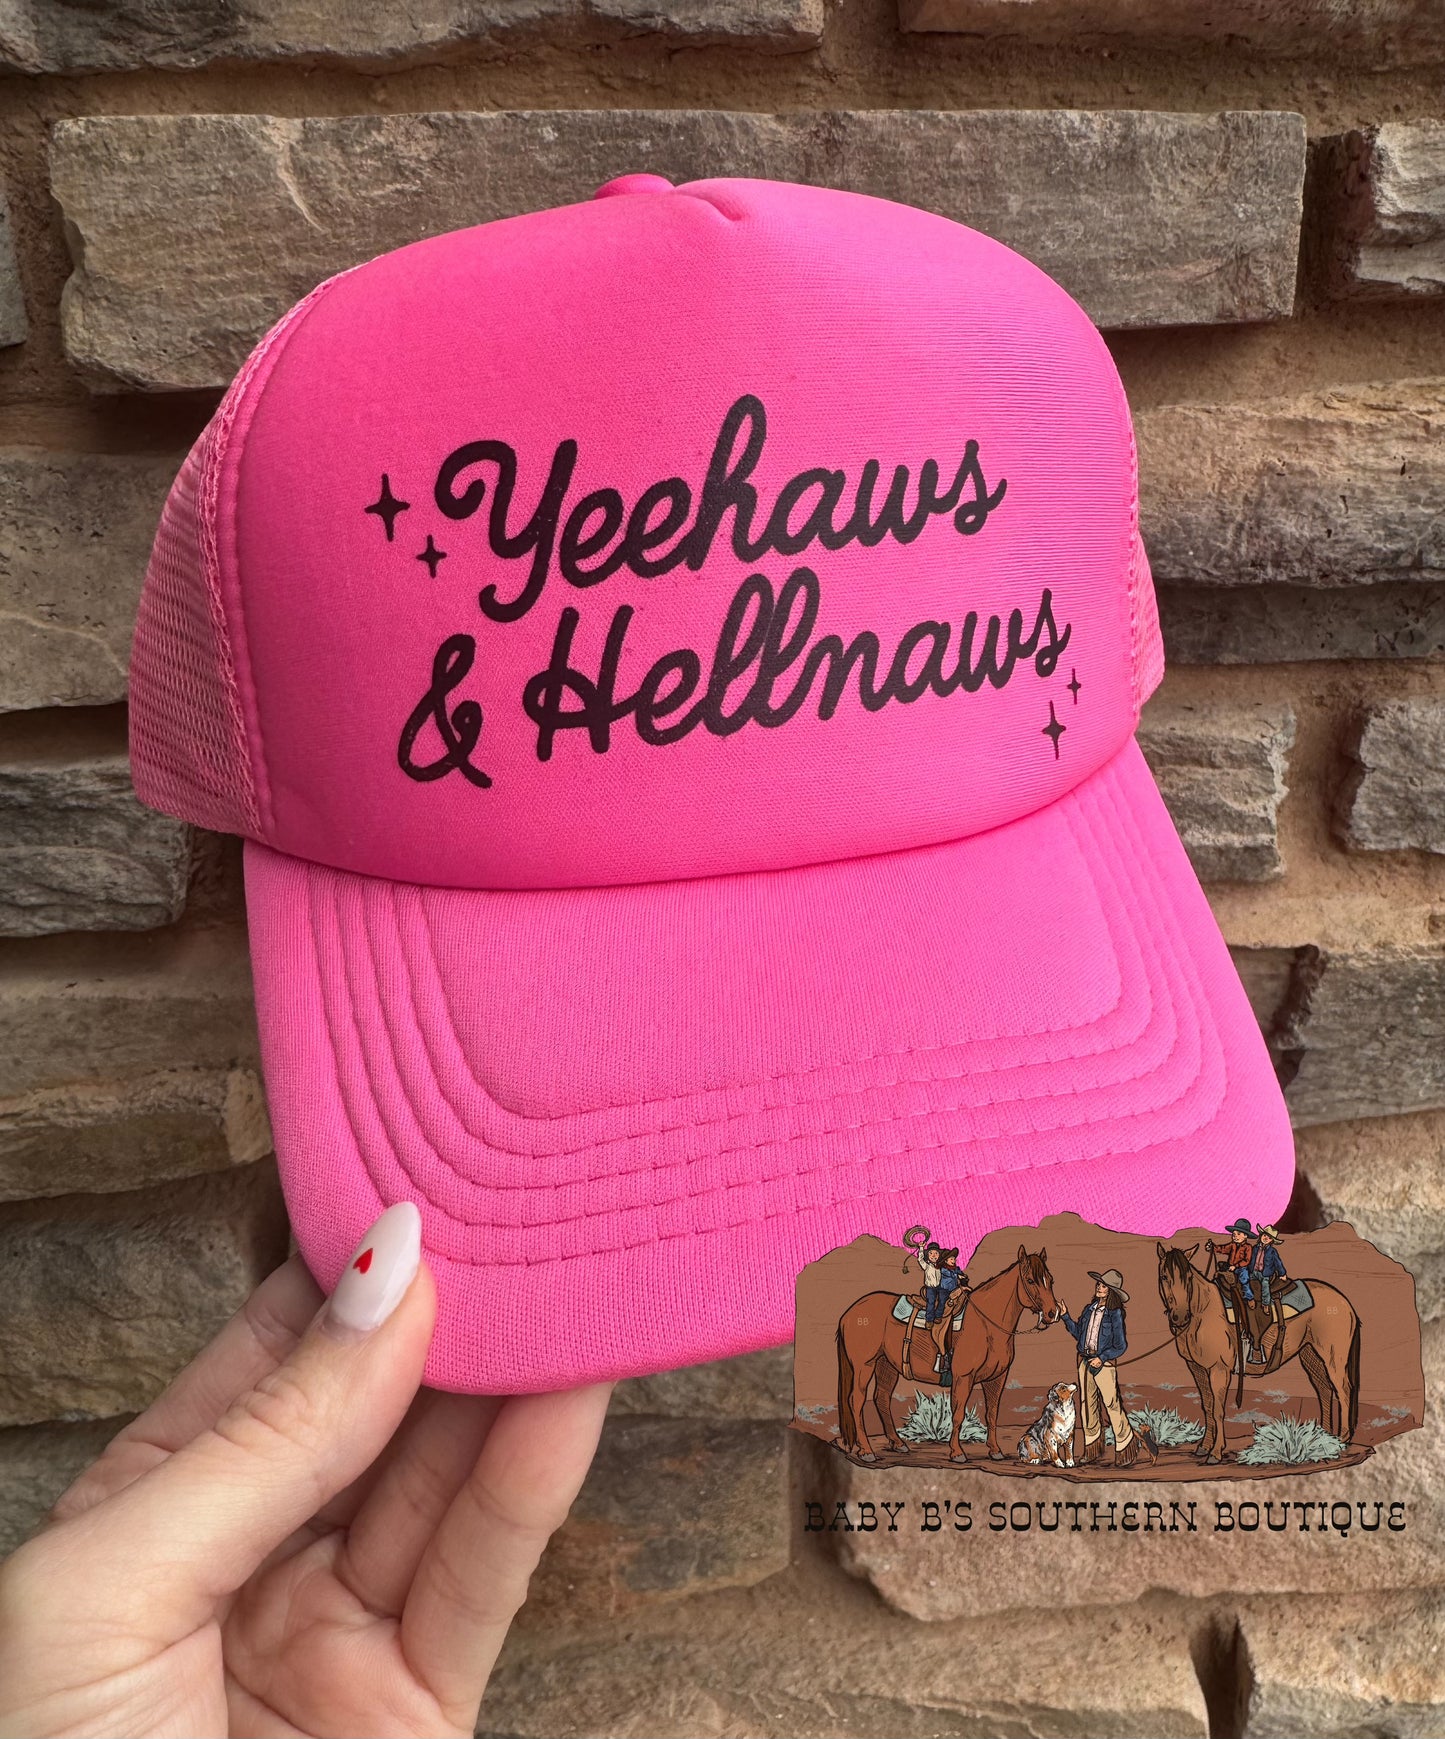 Yeehaws & Hellnaws Adult Trucker Hat